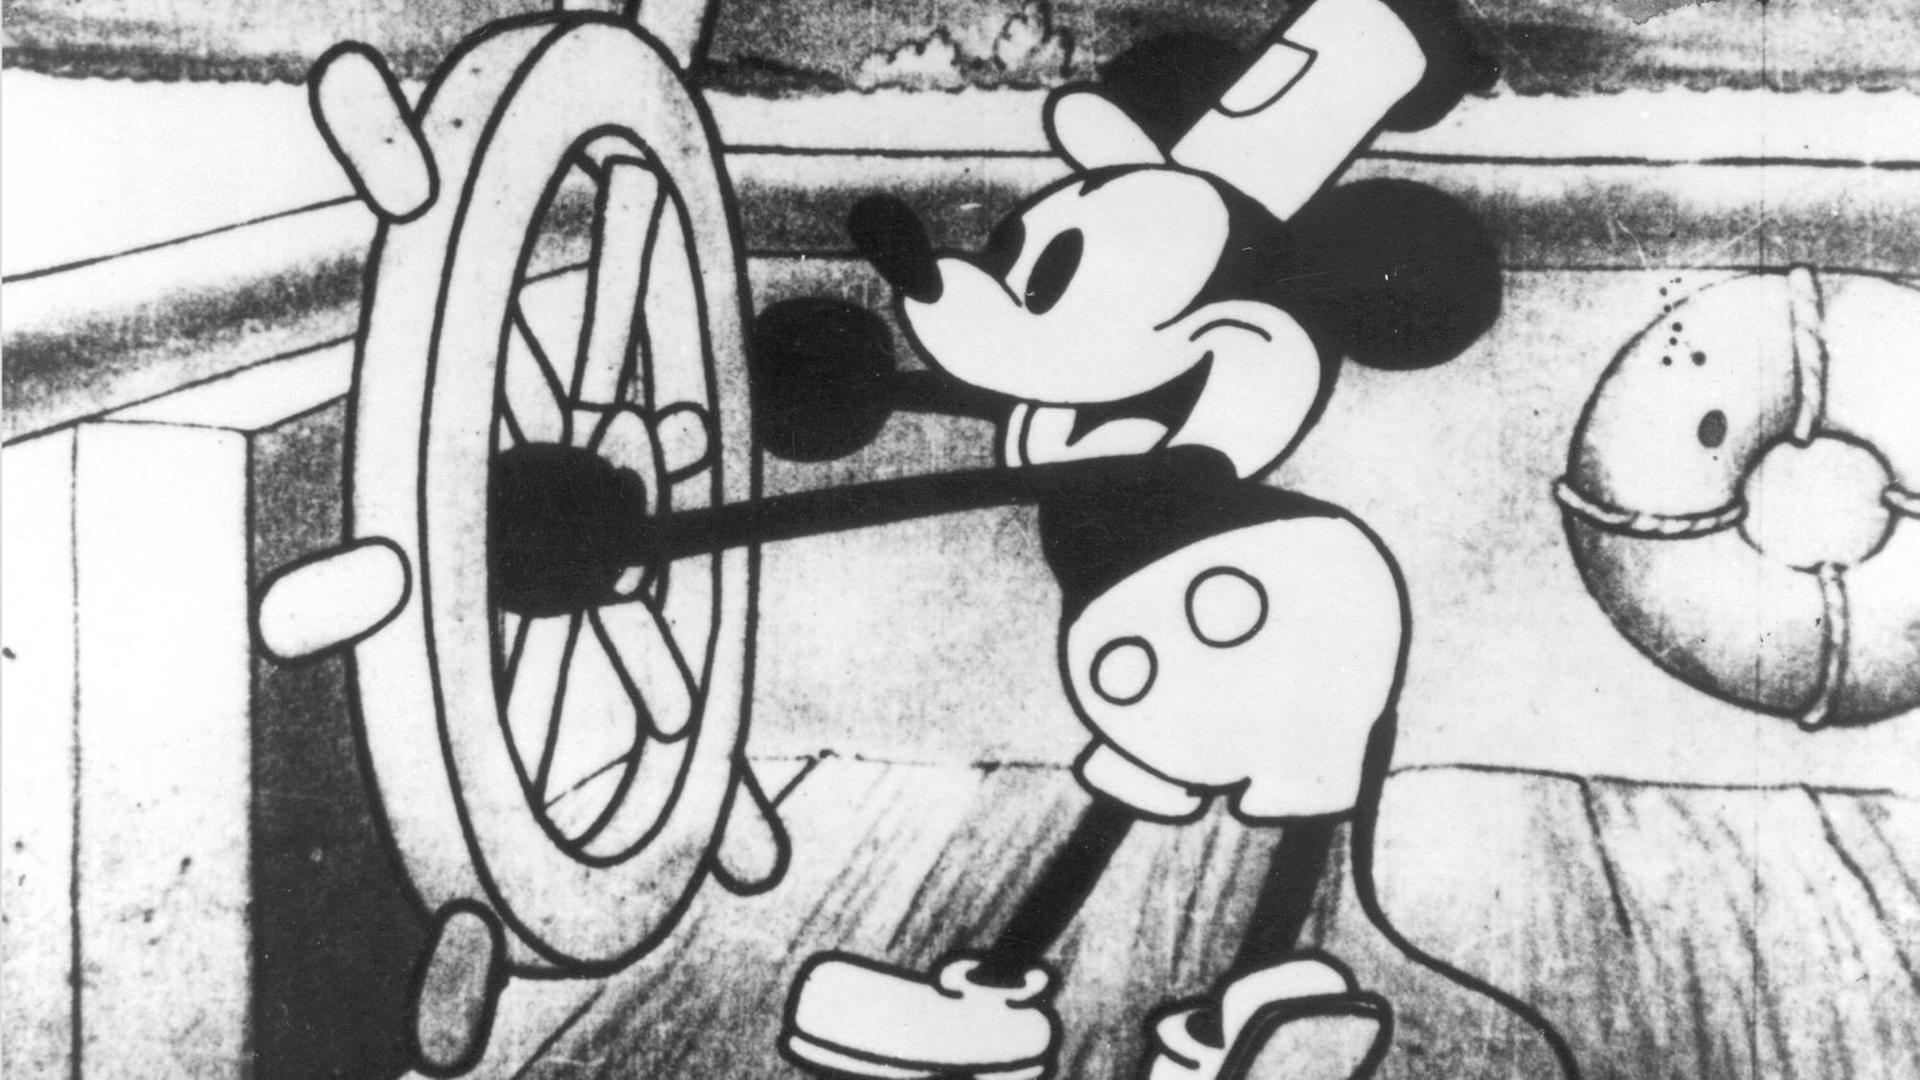 Mickey Mouse am Ruder eines Schiffes in "Steamboat Willie", der am 18. November 1928 in New York Premiere feierte